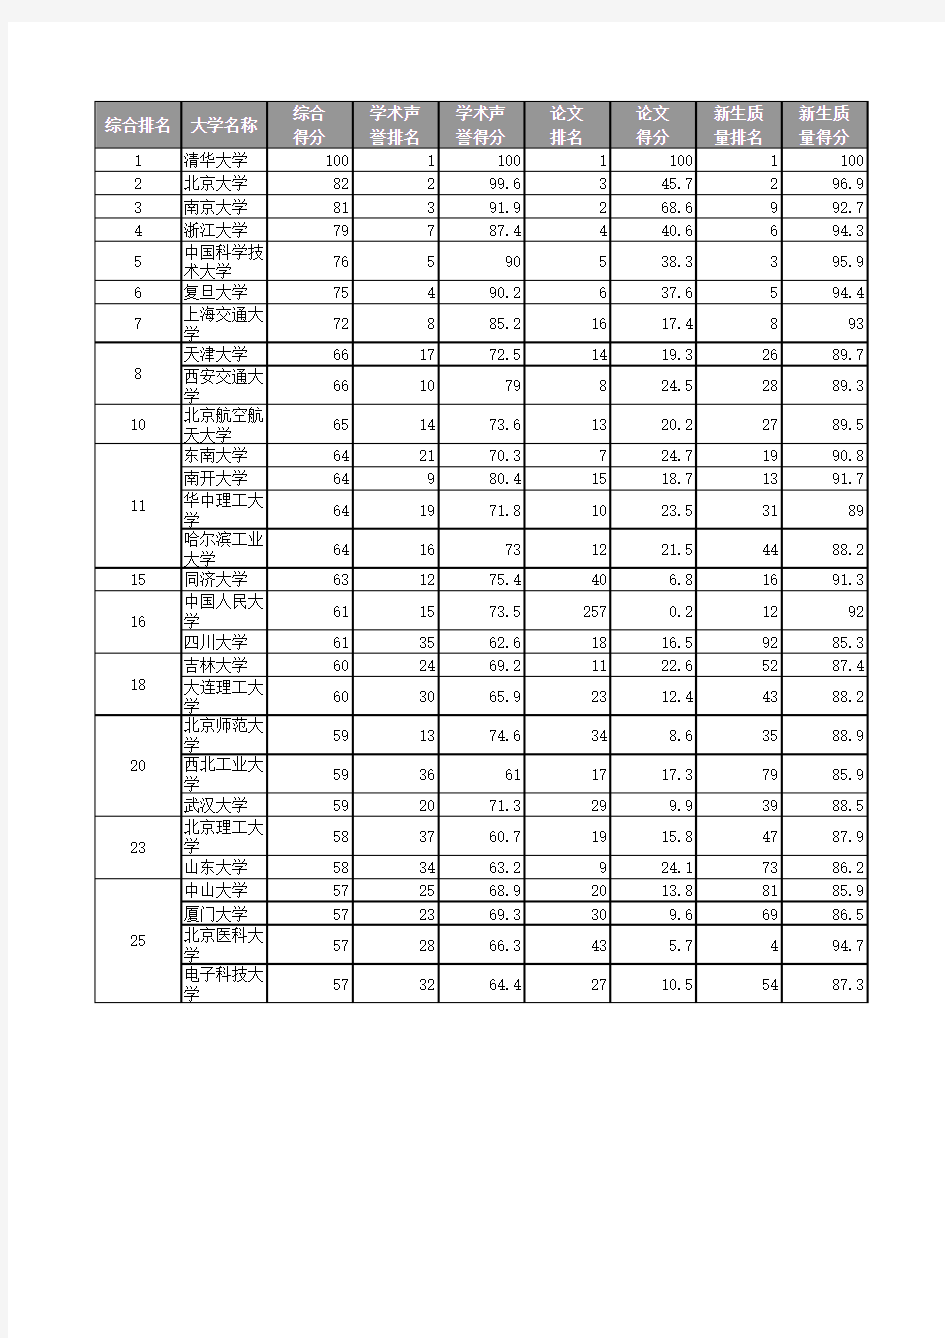 1999年中国大学排名